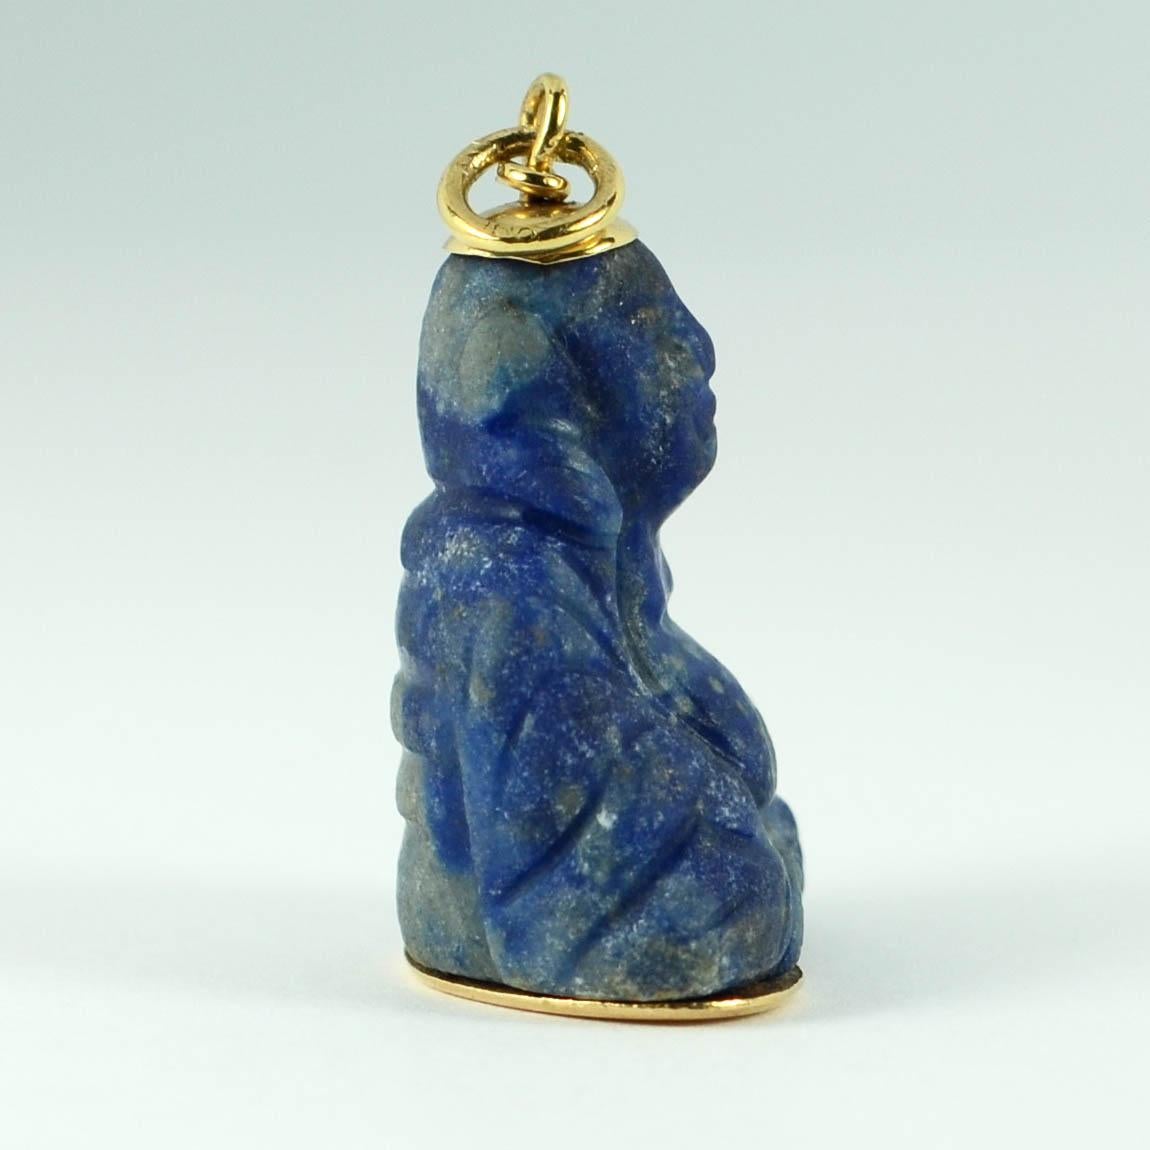 Uncut 18 Karat Yellow Gold Blue Lapis Lazuli Buddha Large Charm Pendant